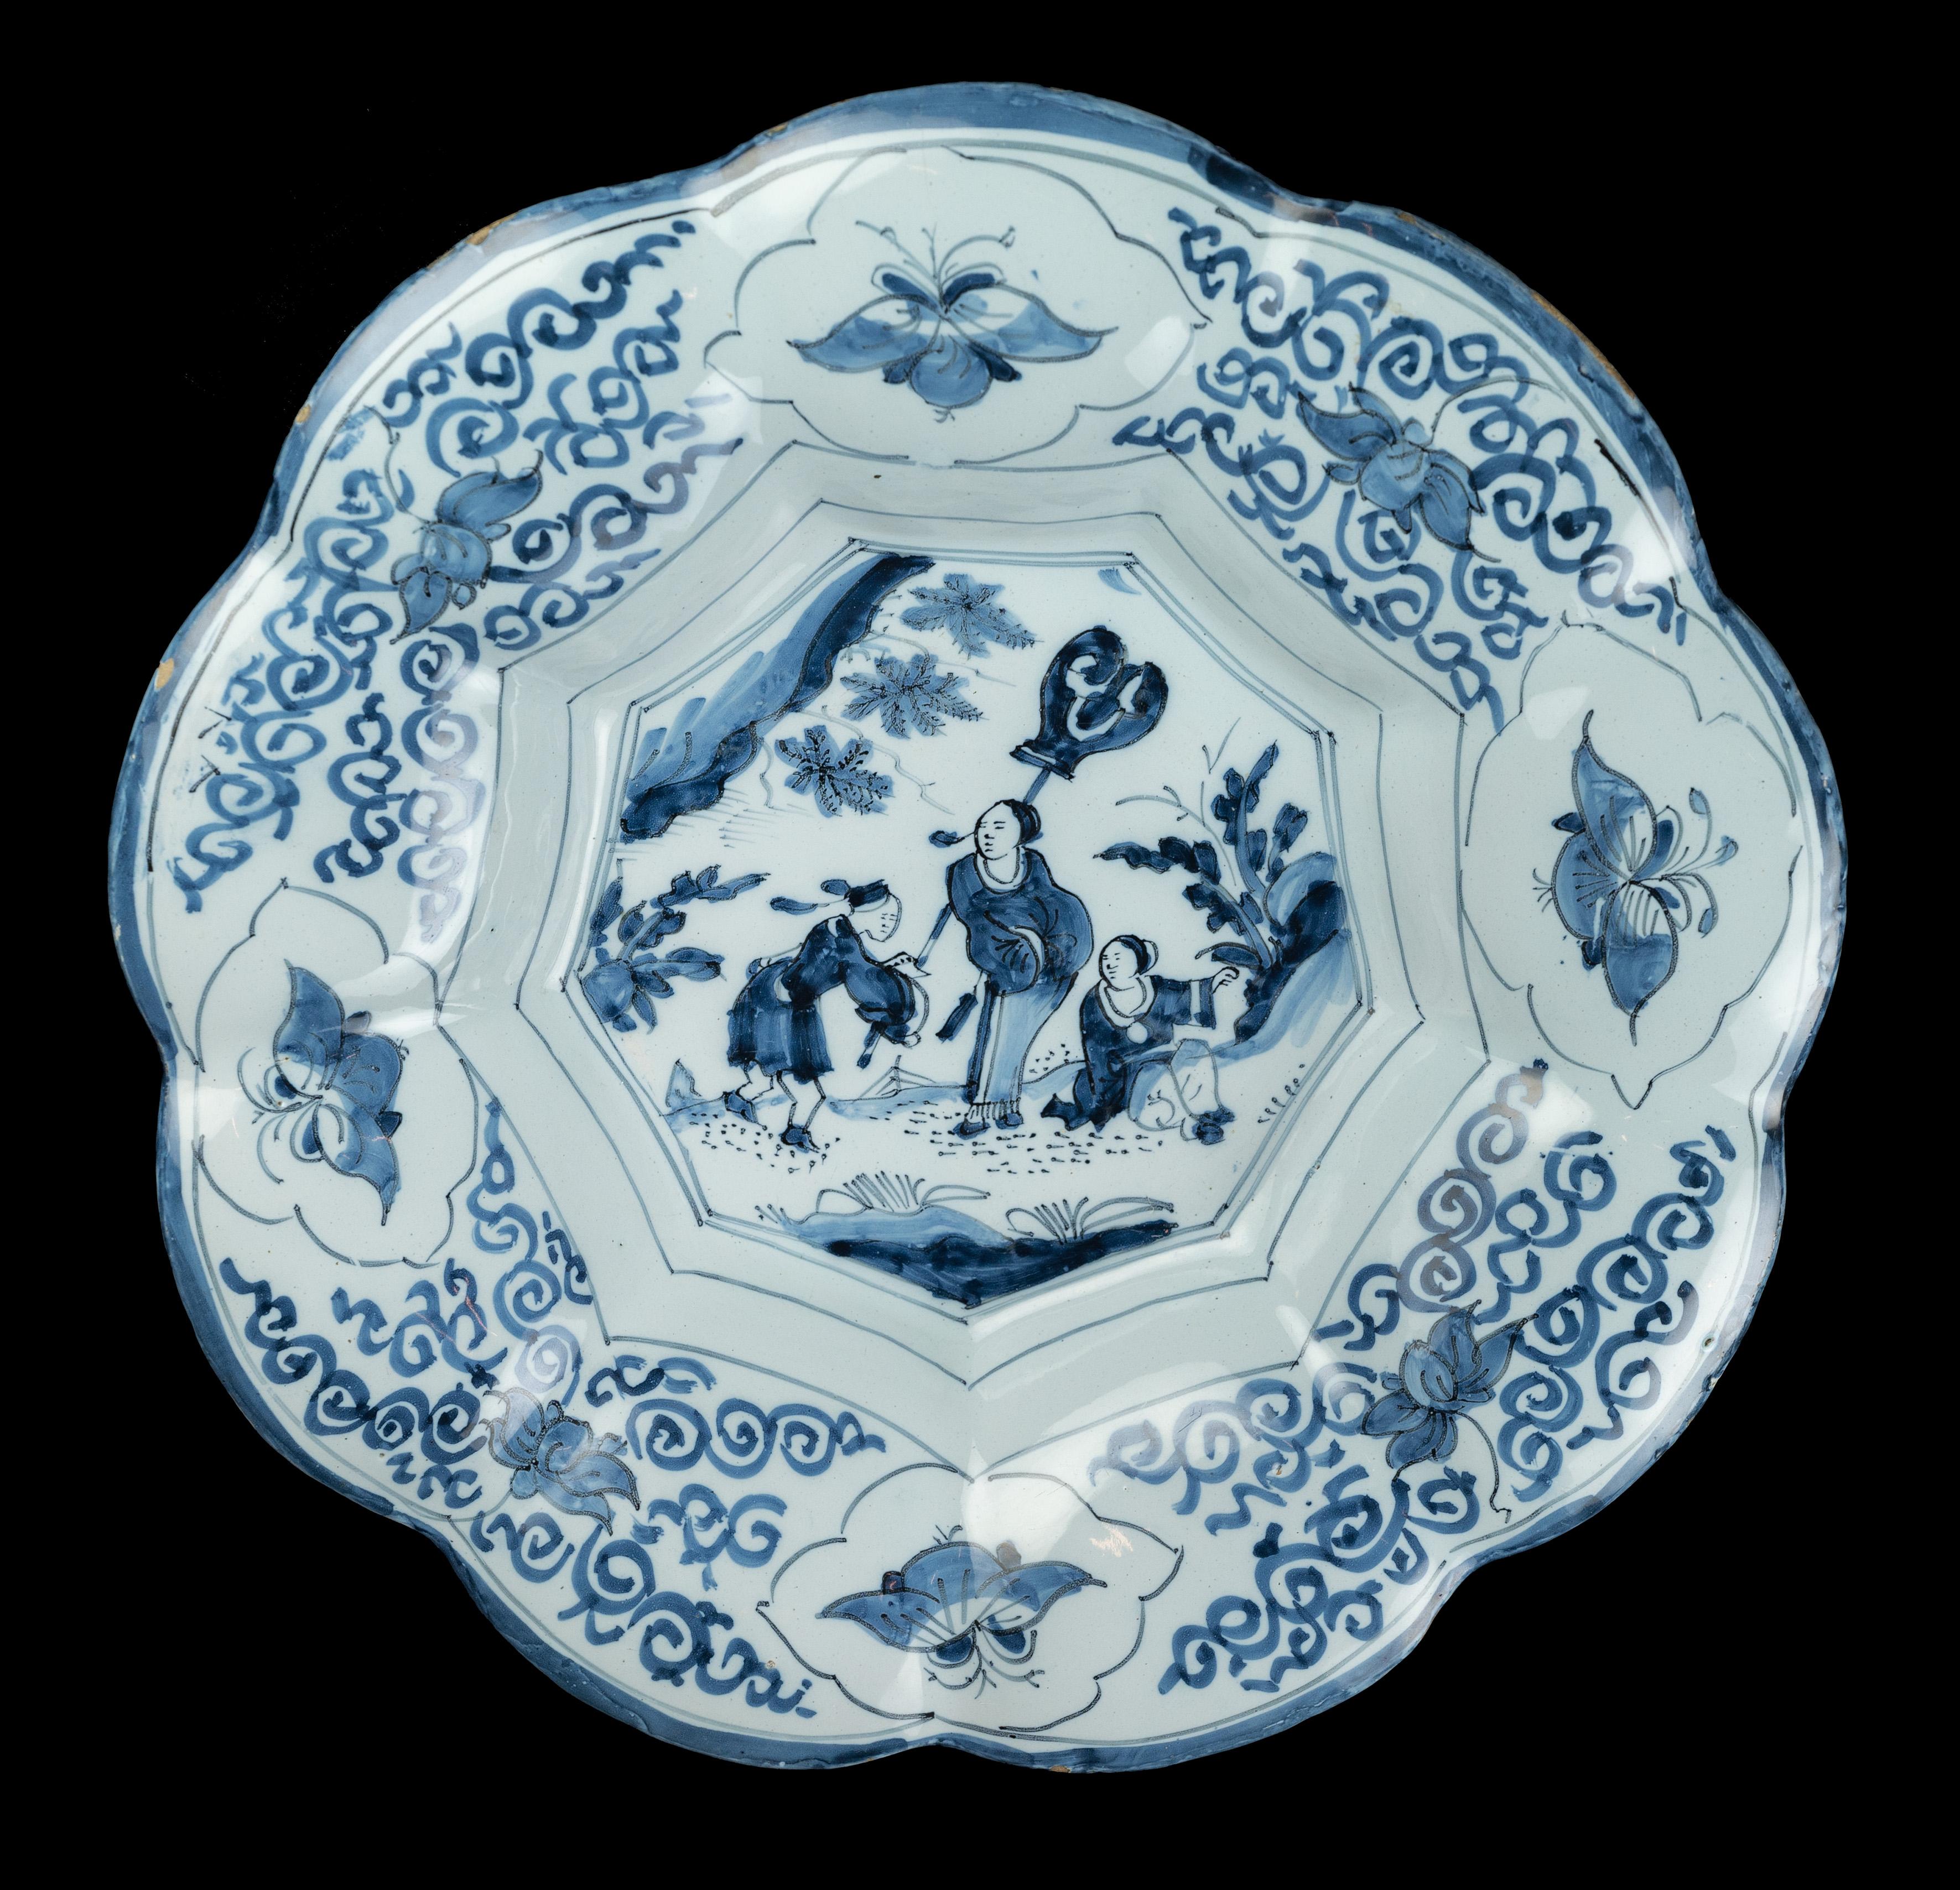 Blaue und weiße Chinoiserie-Schale mit Lappen. Delft, 1680-1700 
Abmessungen: Durchmesser 35 cm / 13,77 in. 

Die blau-weiß gelappte Schale besteht aus neun breiten Lappen, die sich um ein neunfaches Zentrum gruppieren, und ist mit einem